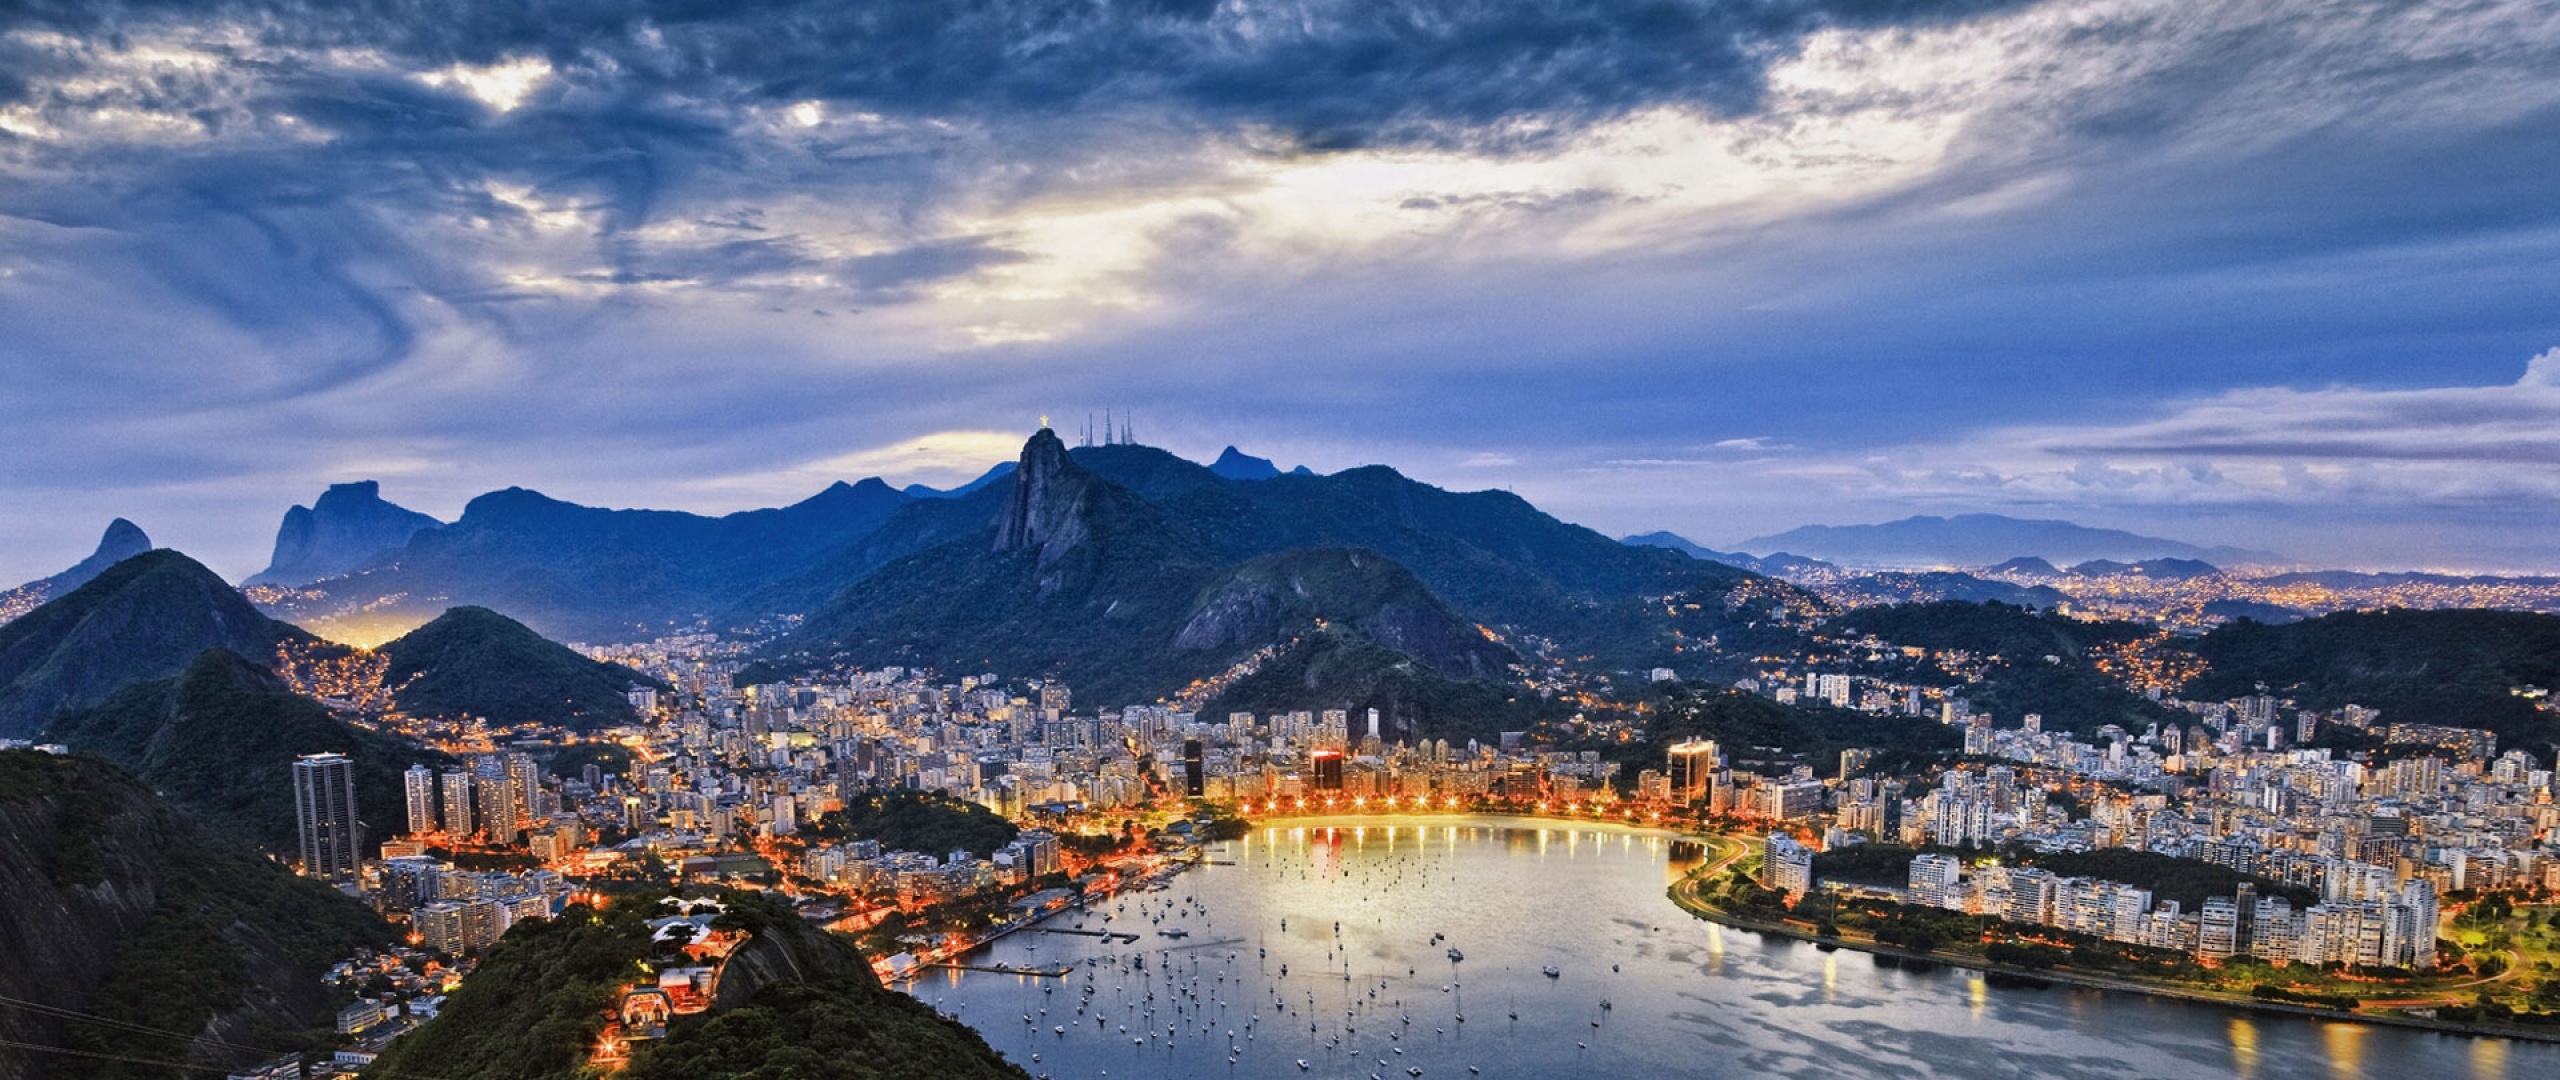 Wallpaper Brazil, Rio de Janeiro, Guanabara Bay, 2560x1080 Dual Screen Desktop